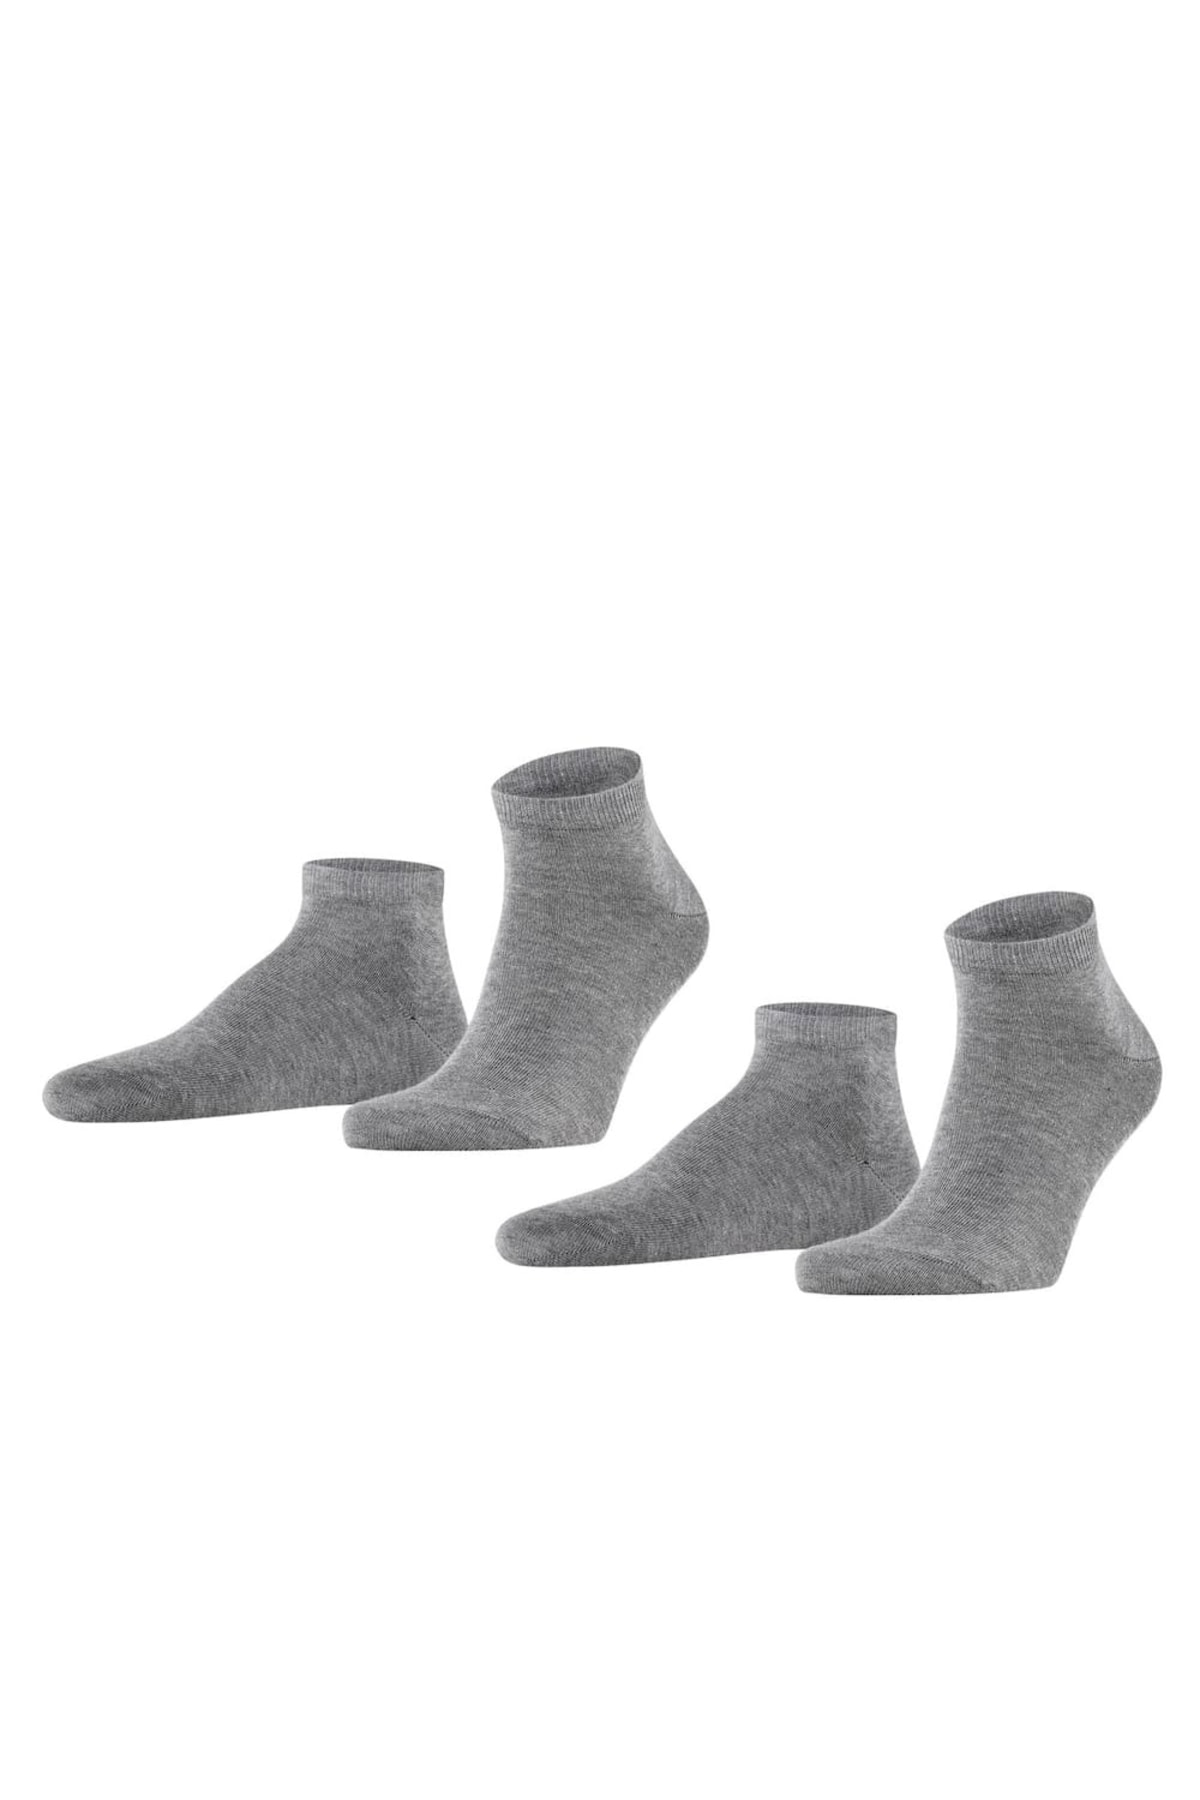 FALKE Socken Grau Casual